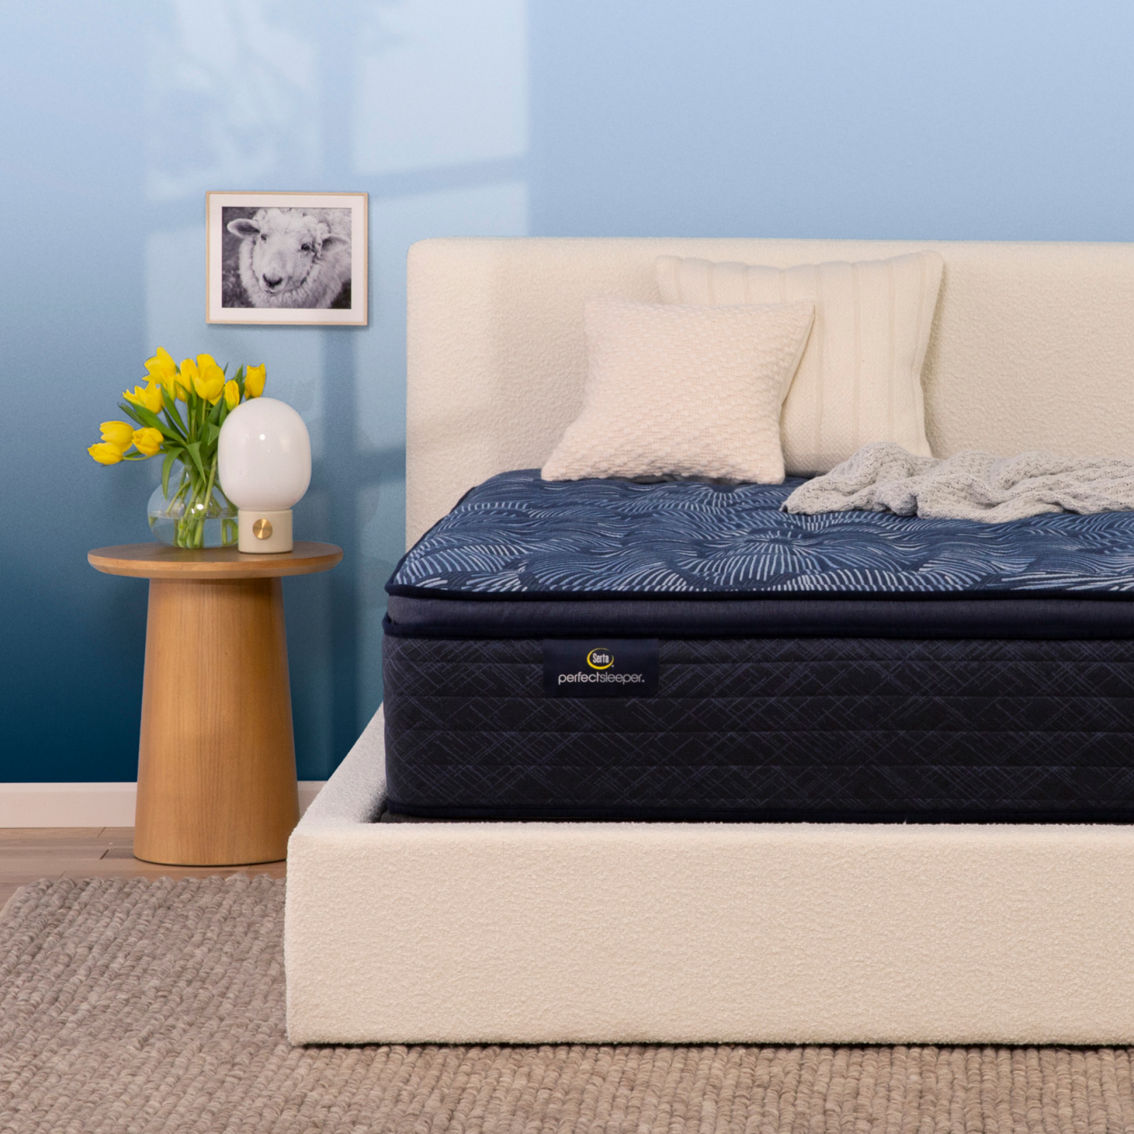 Serta Perfect Sleeper Cobalt Calm 14.5 in. Medium Pillow Top Mattress - Image 3 of 4